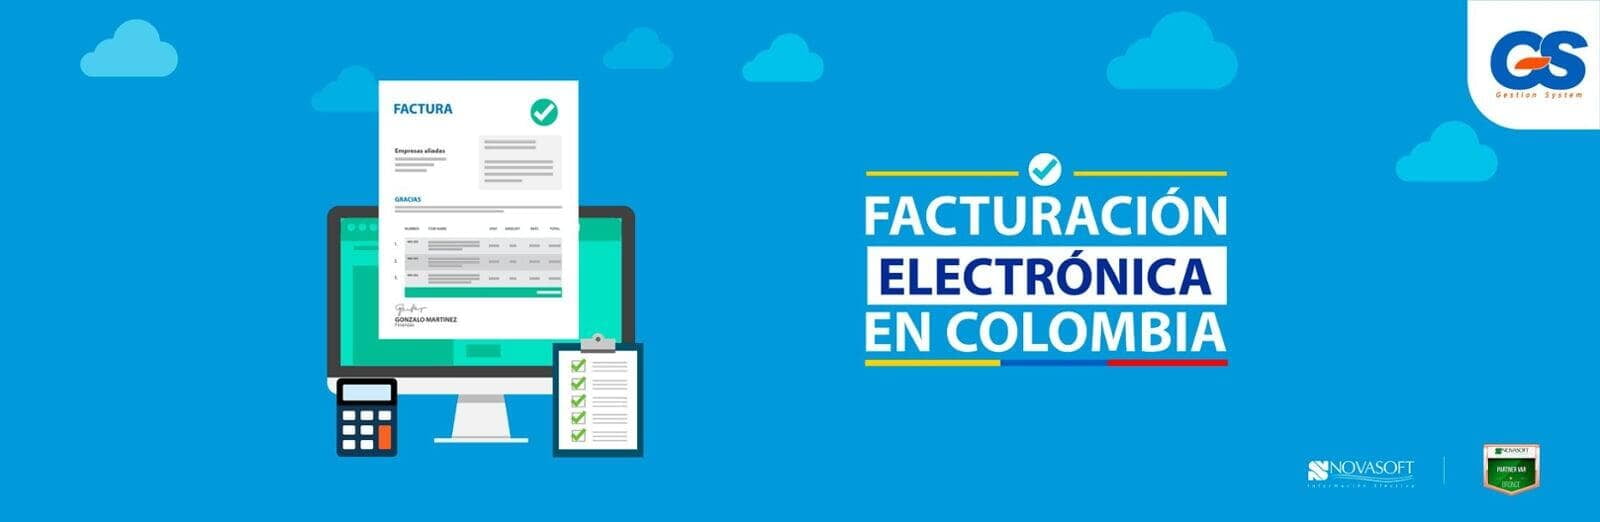 Facturación Electrónica Dian Colombia